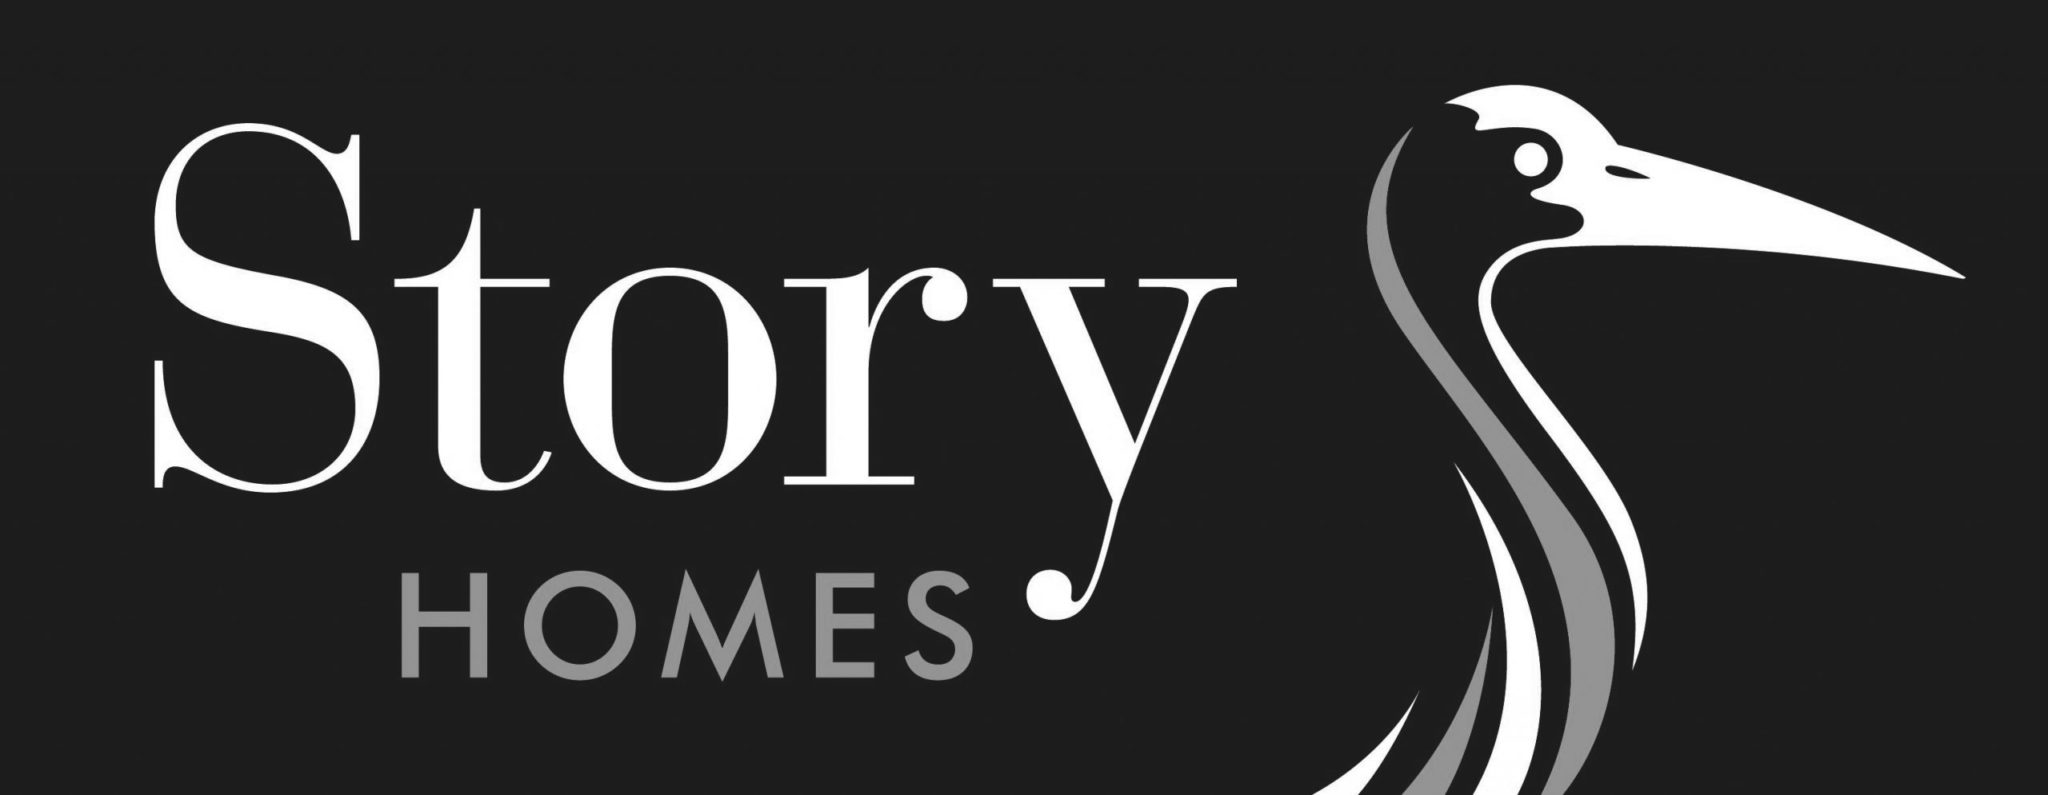 Story_Homes_Logo_RGB BW